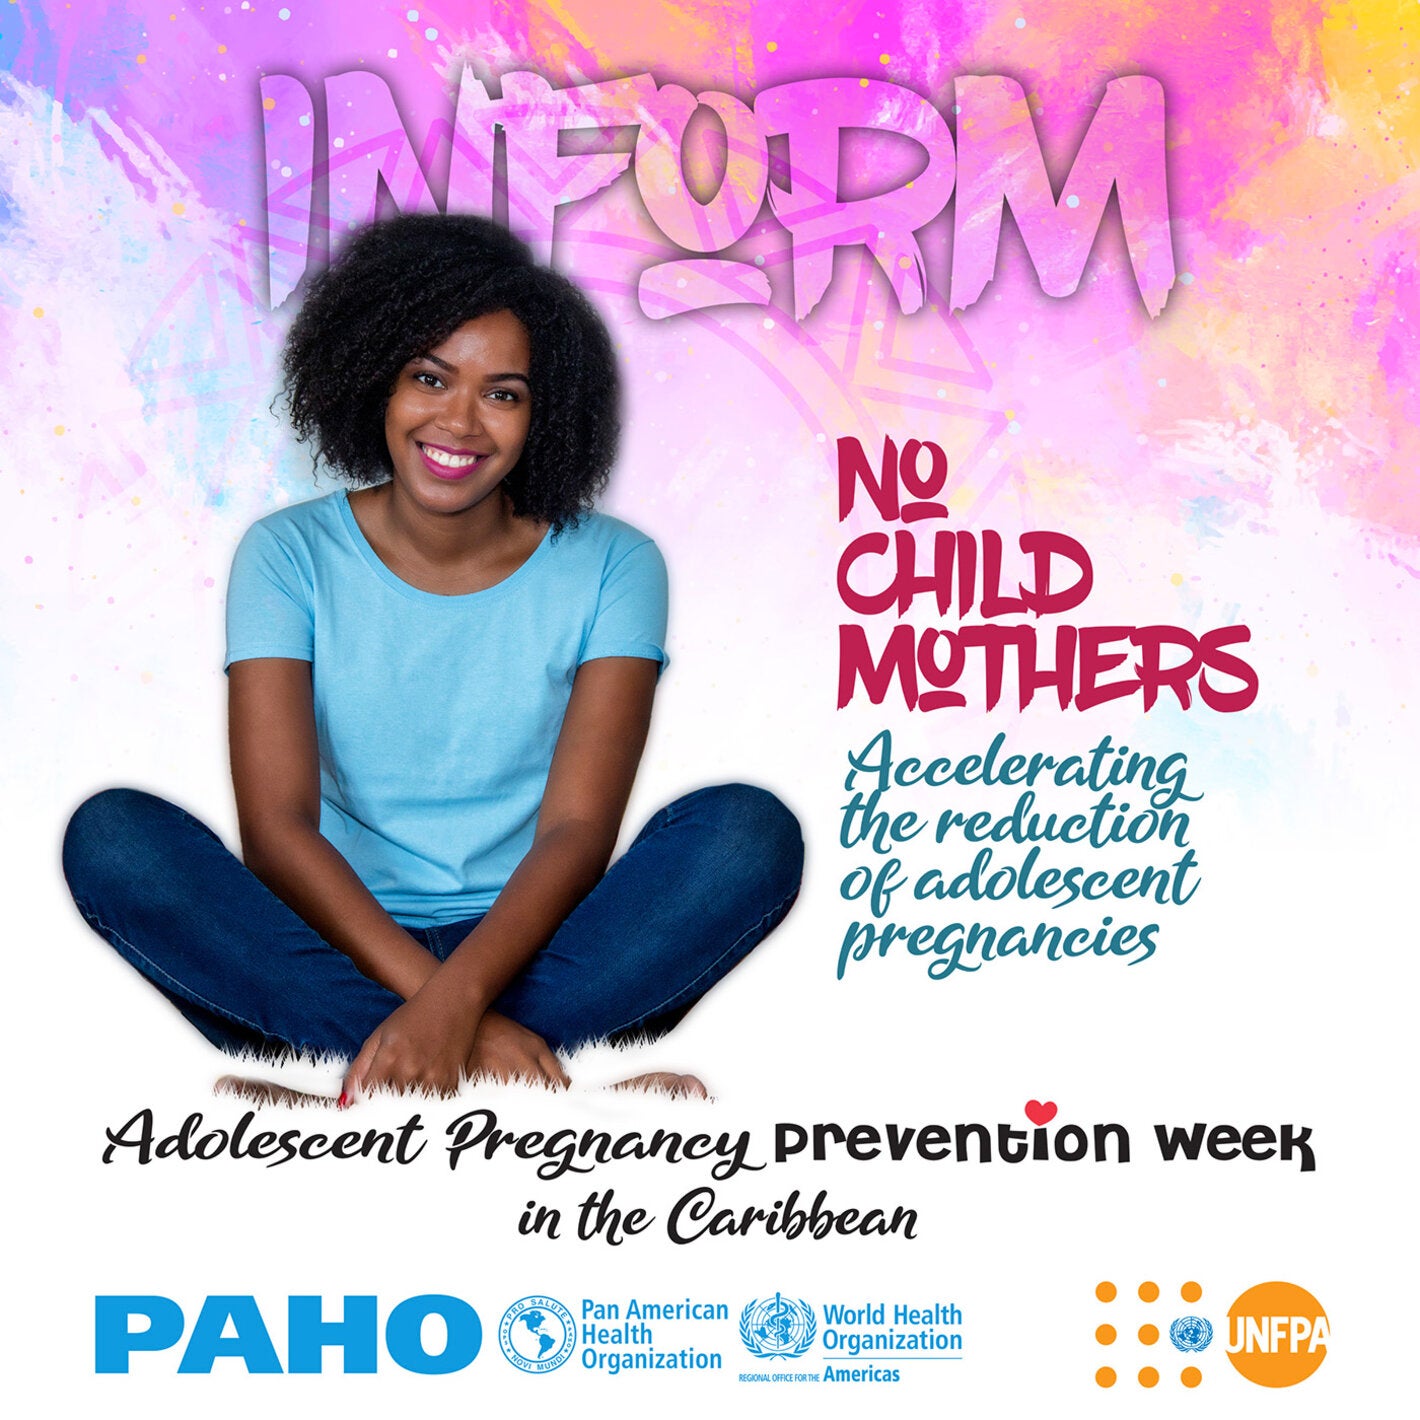 Adolescent pregnancy prevention week 2020